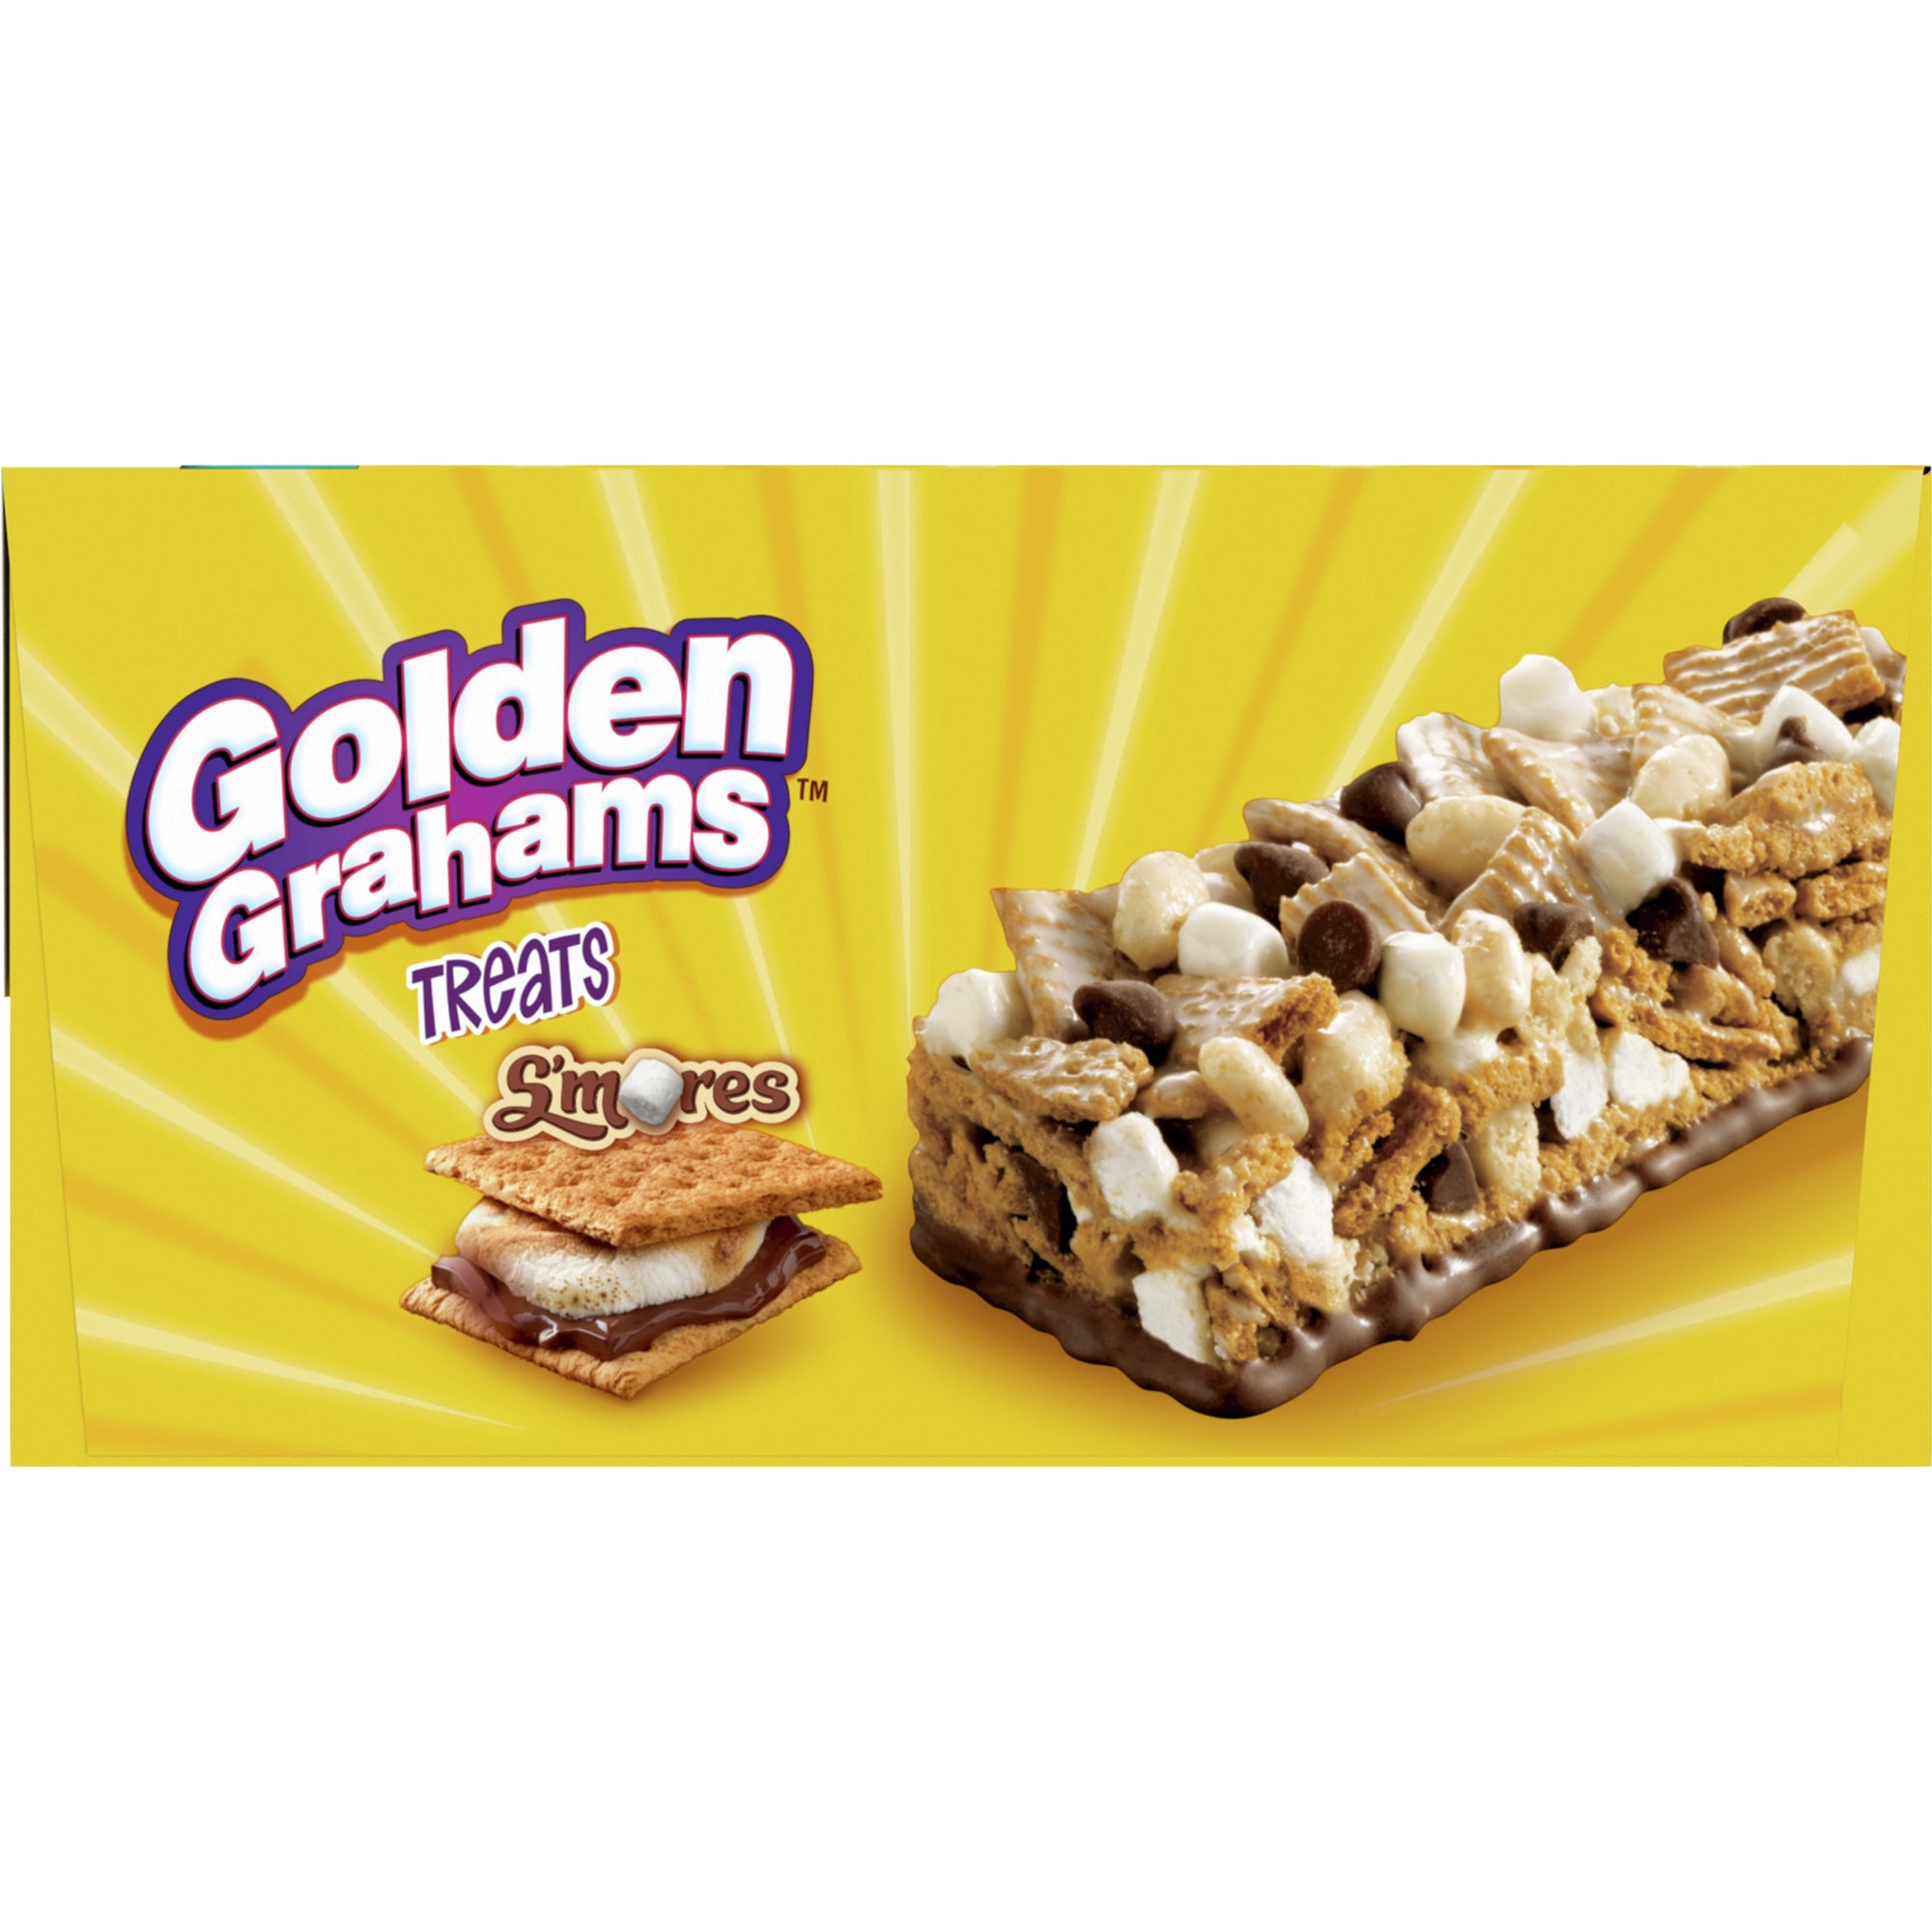 Golden Graham's S'mores Cereal Bar